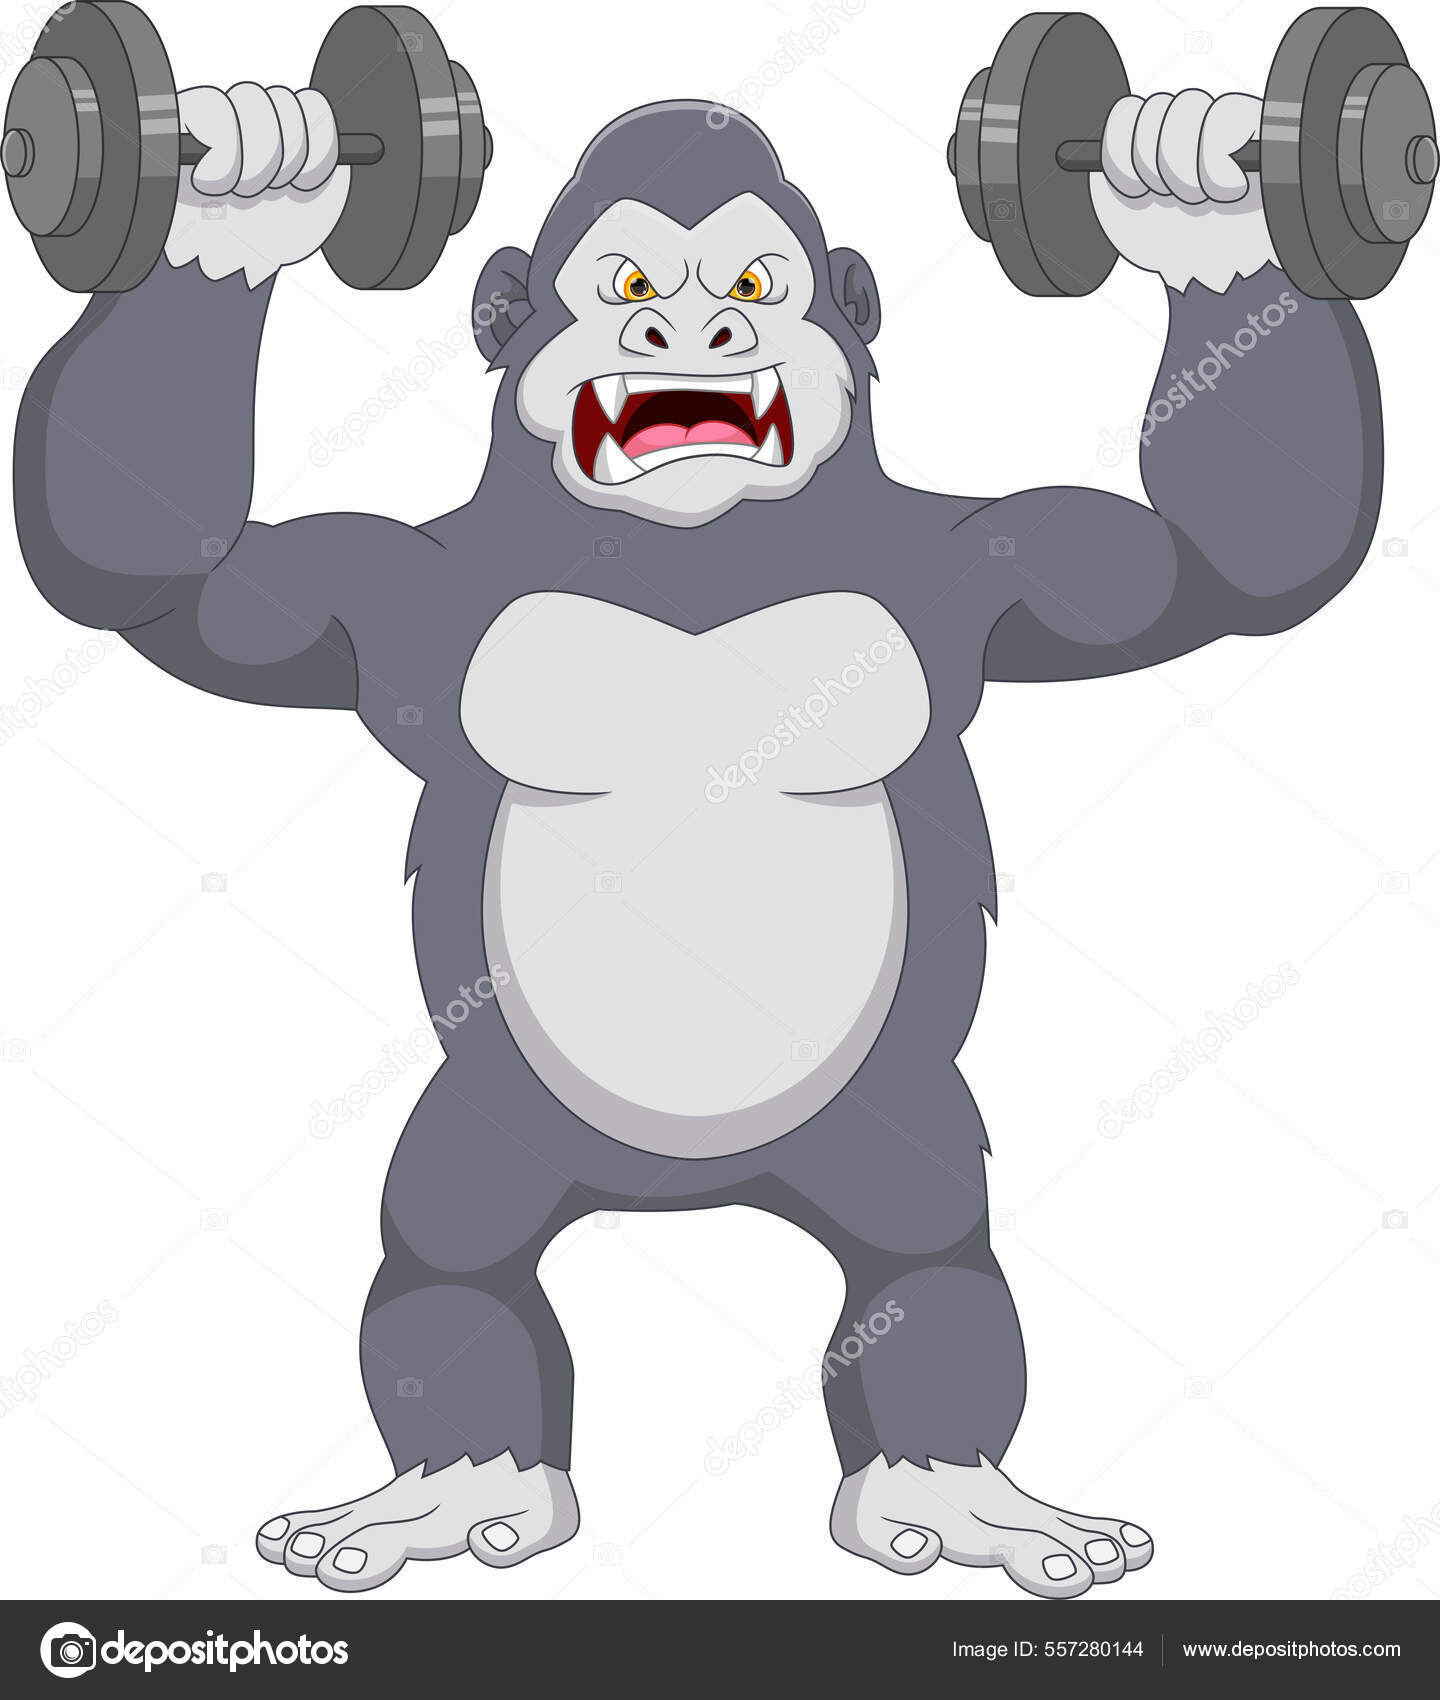 Les meilleurs exercices avec haltères - Blog Gorilla Sports